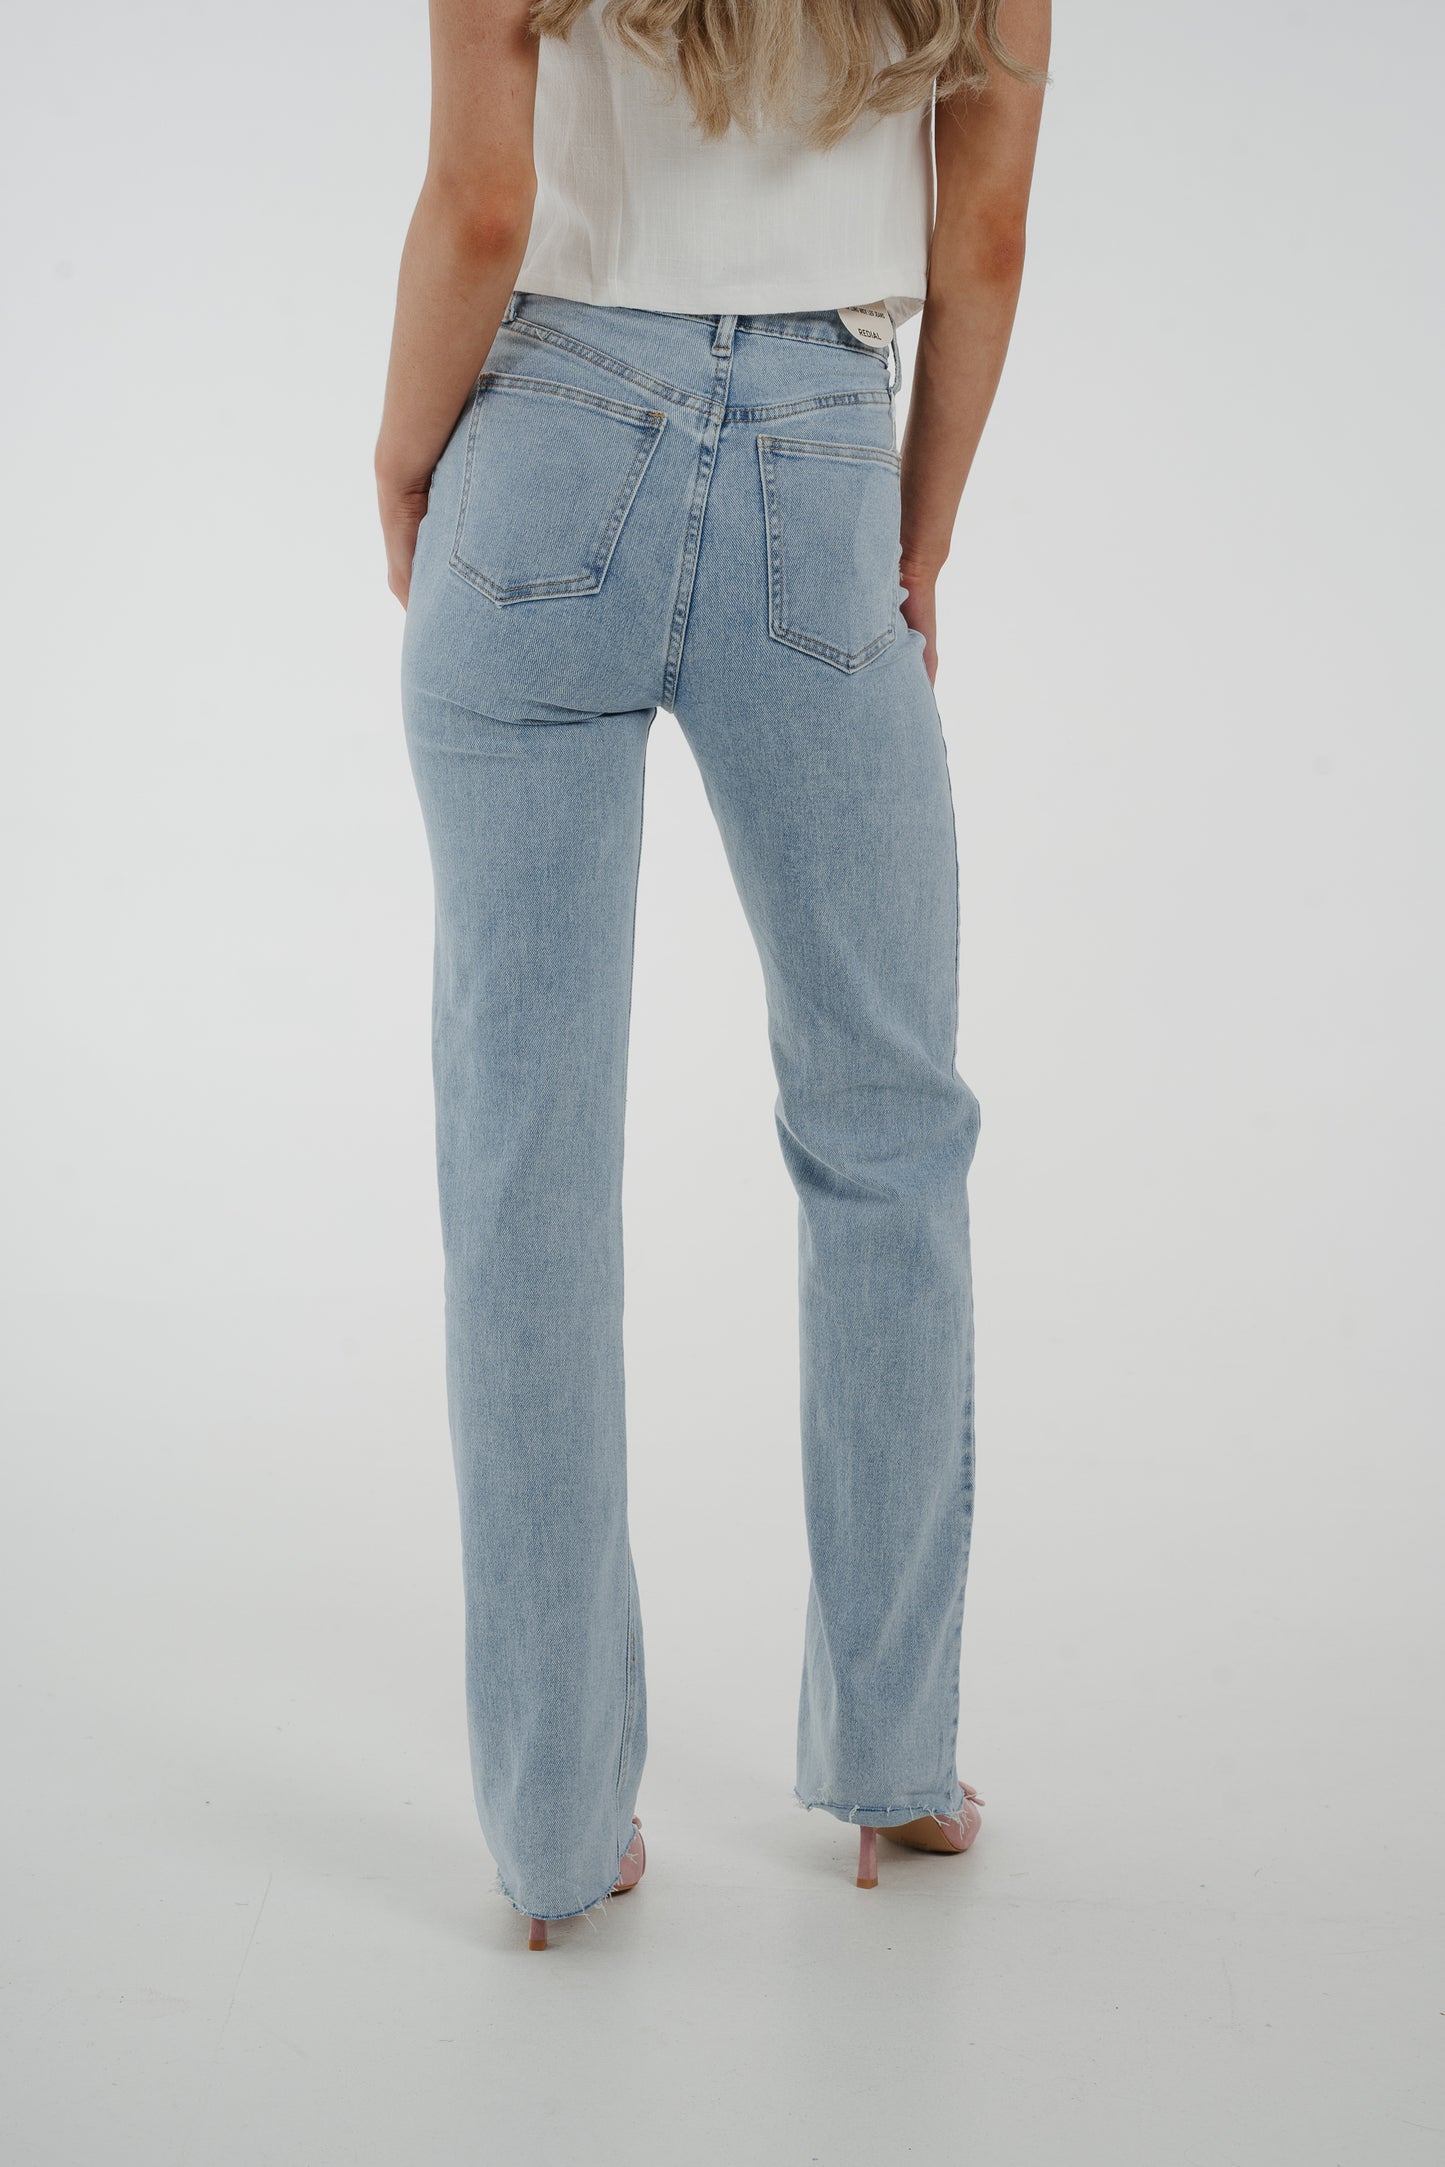 Lynne Long Length Jeans In Light Wash